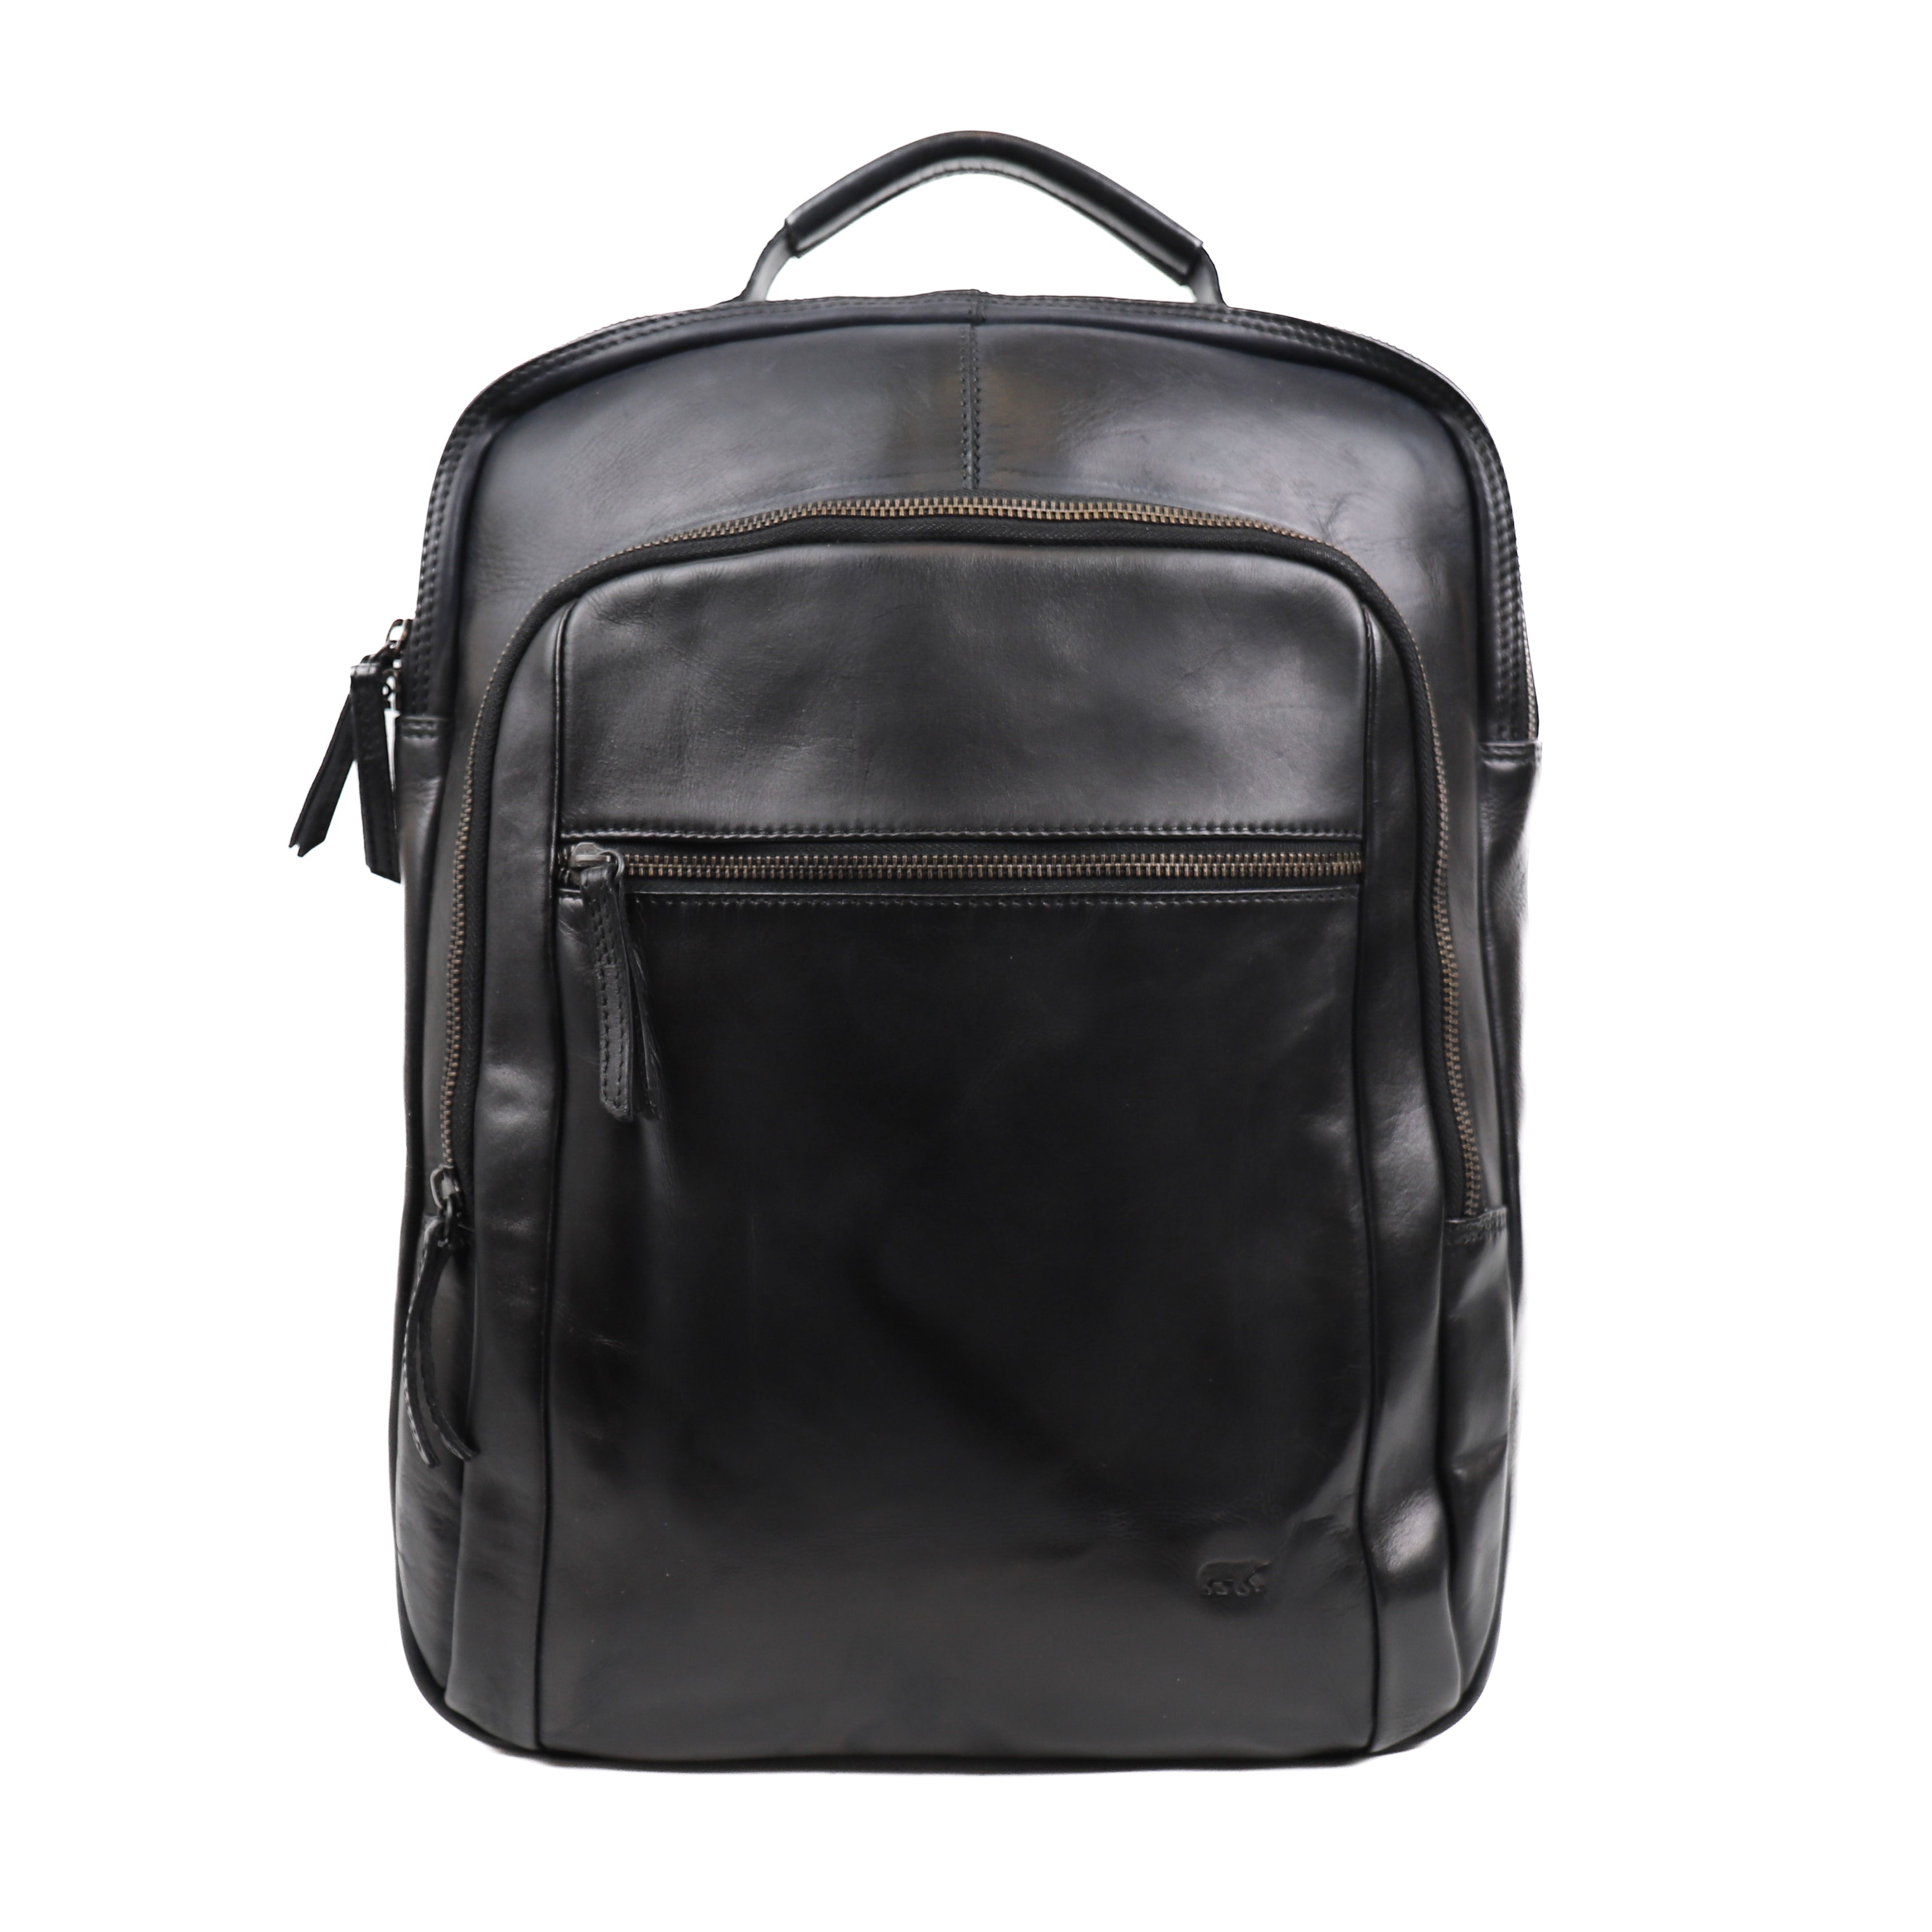 Backpack 'Ties' black - CL 40848